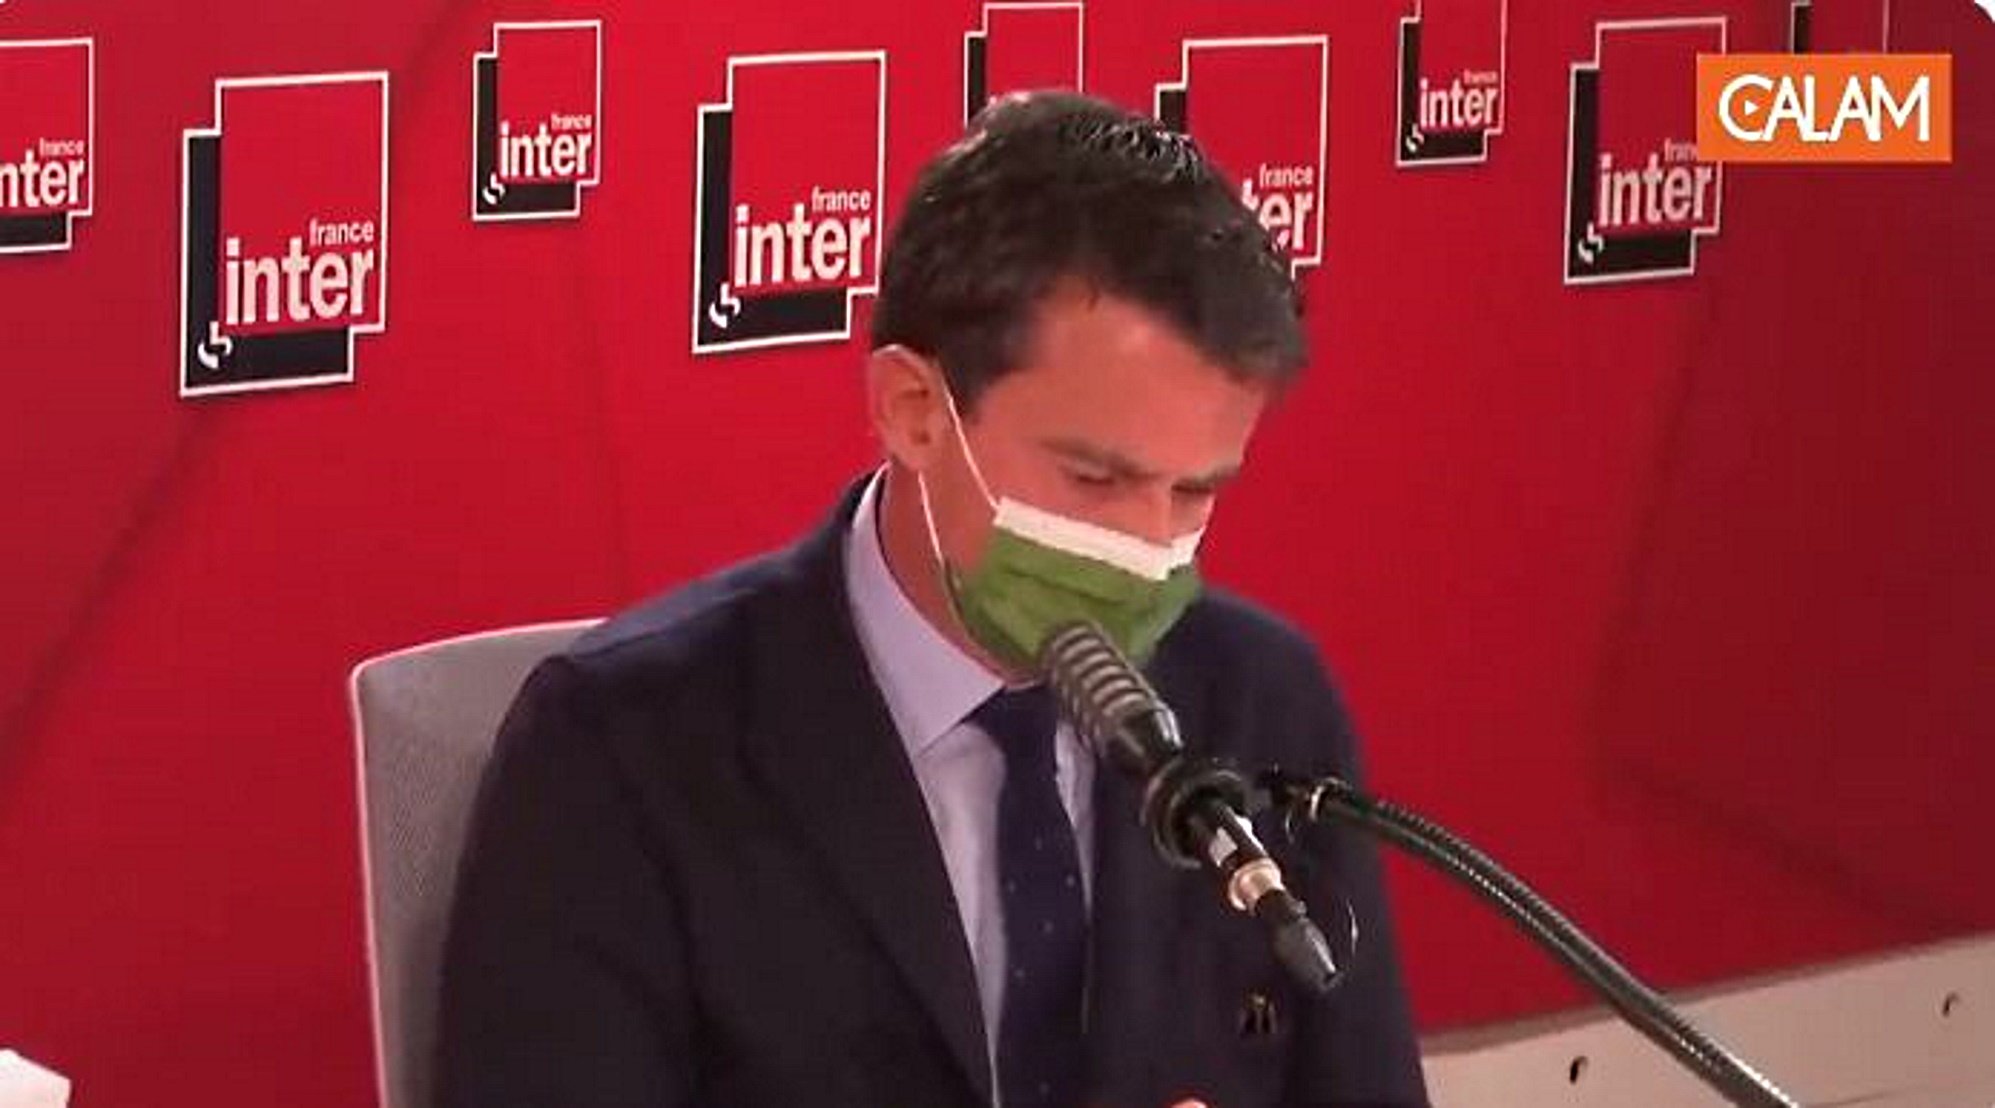 Manuel Valls France Inter